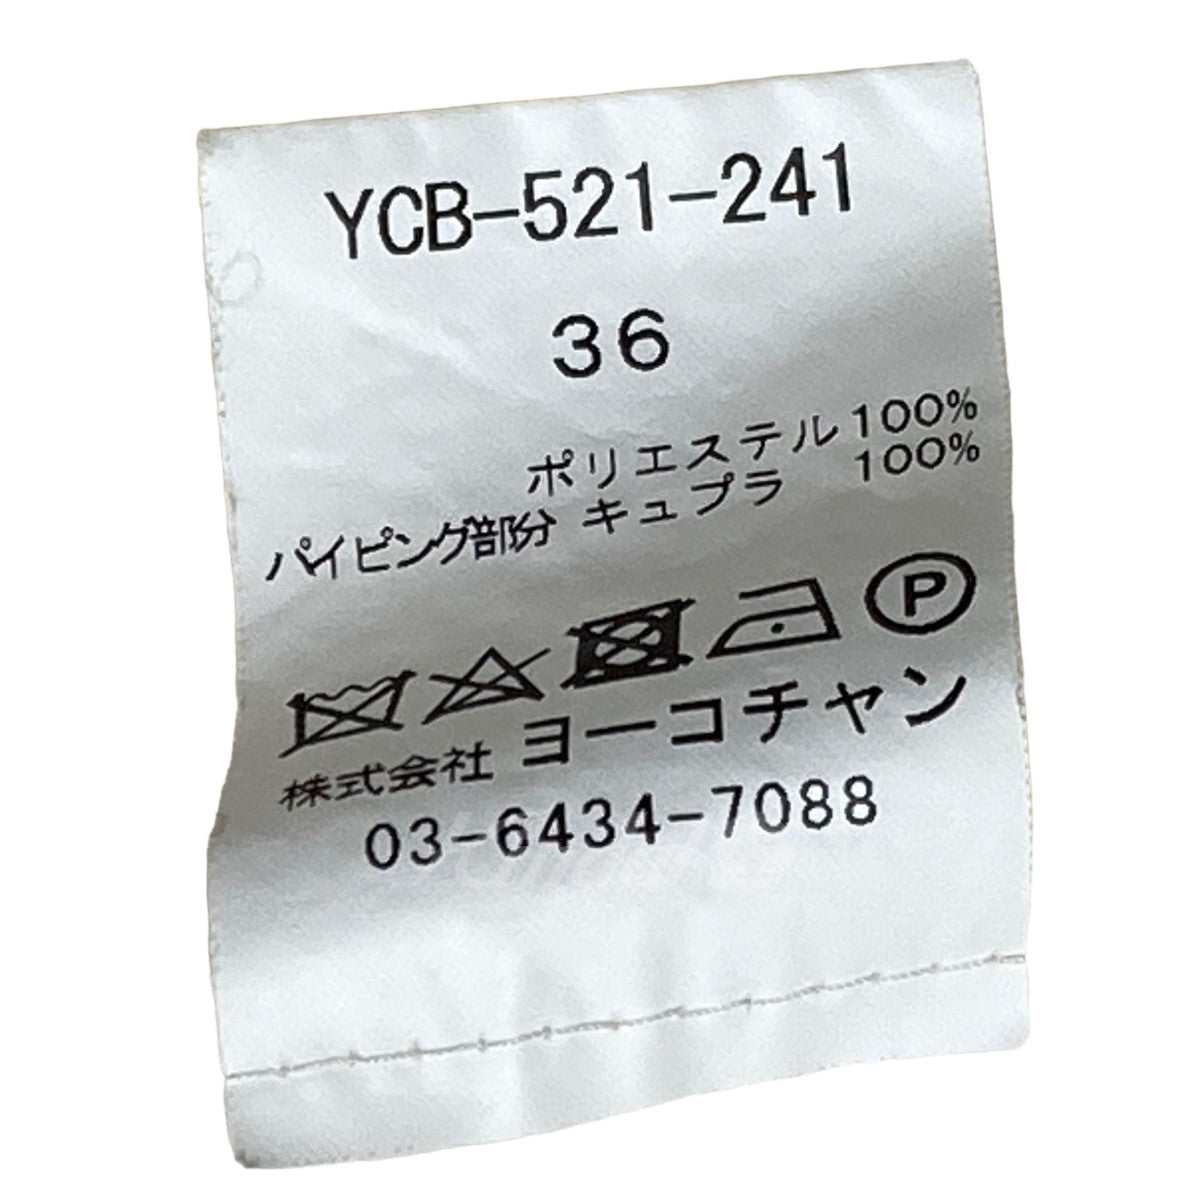 YOKO CHAN(ヨーコチャン) ヘムスカラップブラウス YCB-521-241 ...